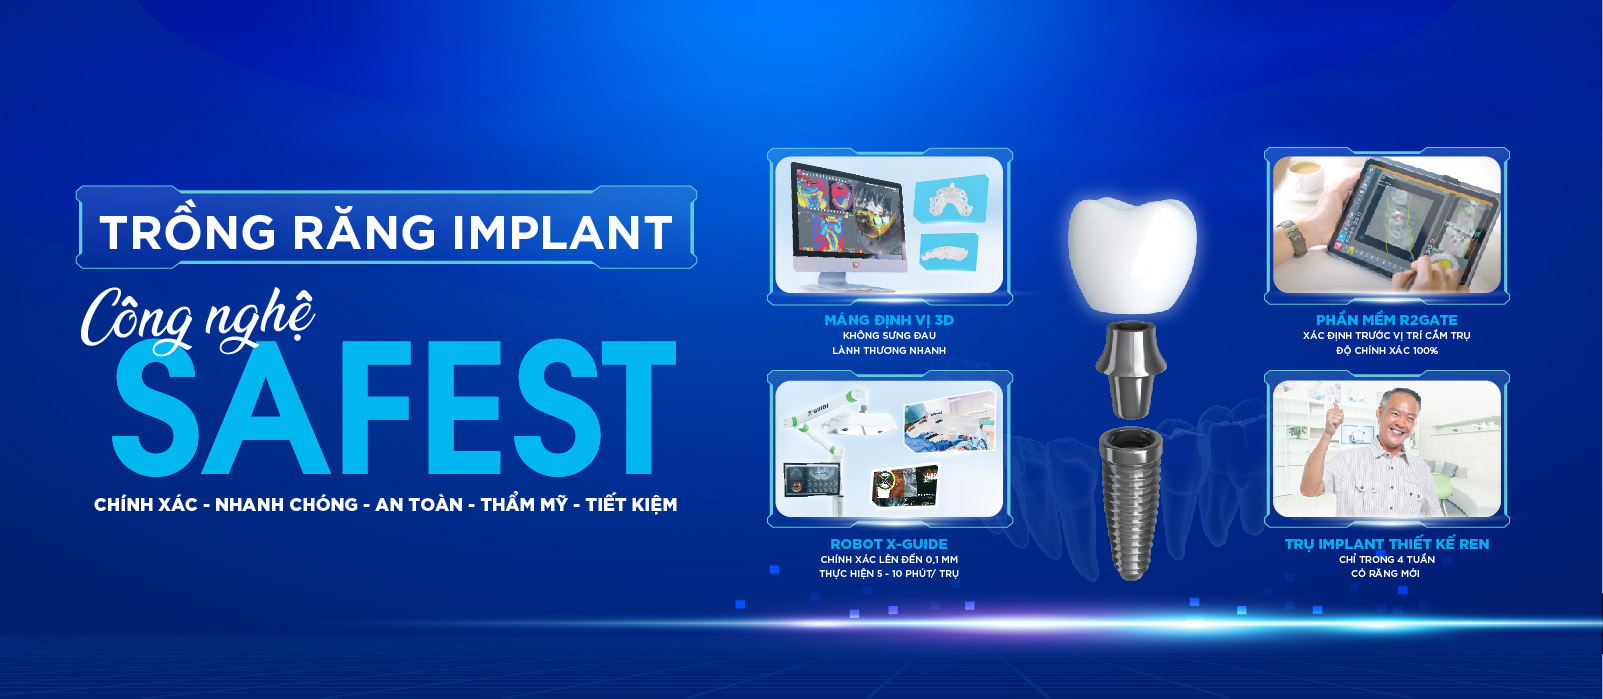 [Top Banner Mobile] Sáu lợi ích tuyệt vời cấy ghép răng implant bằng Robot định vị X-Guide